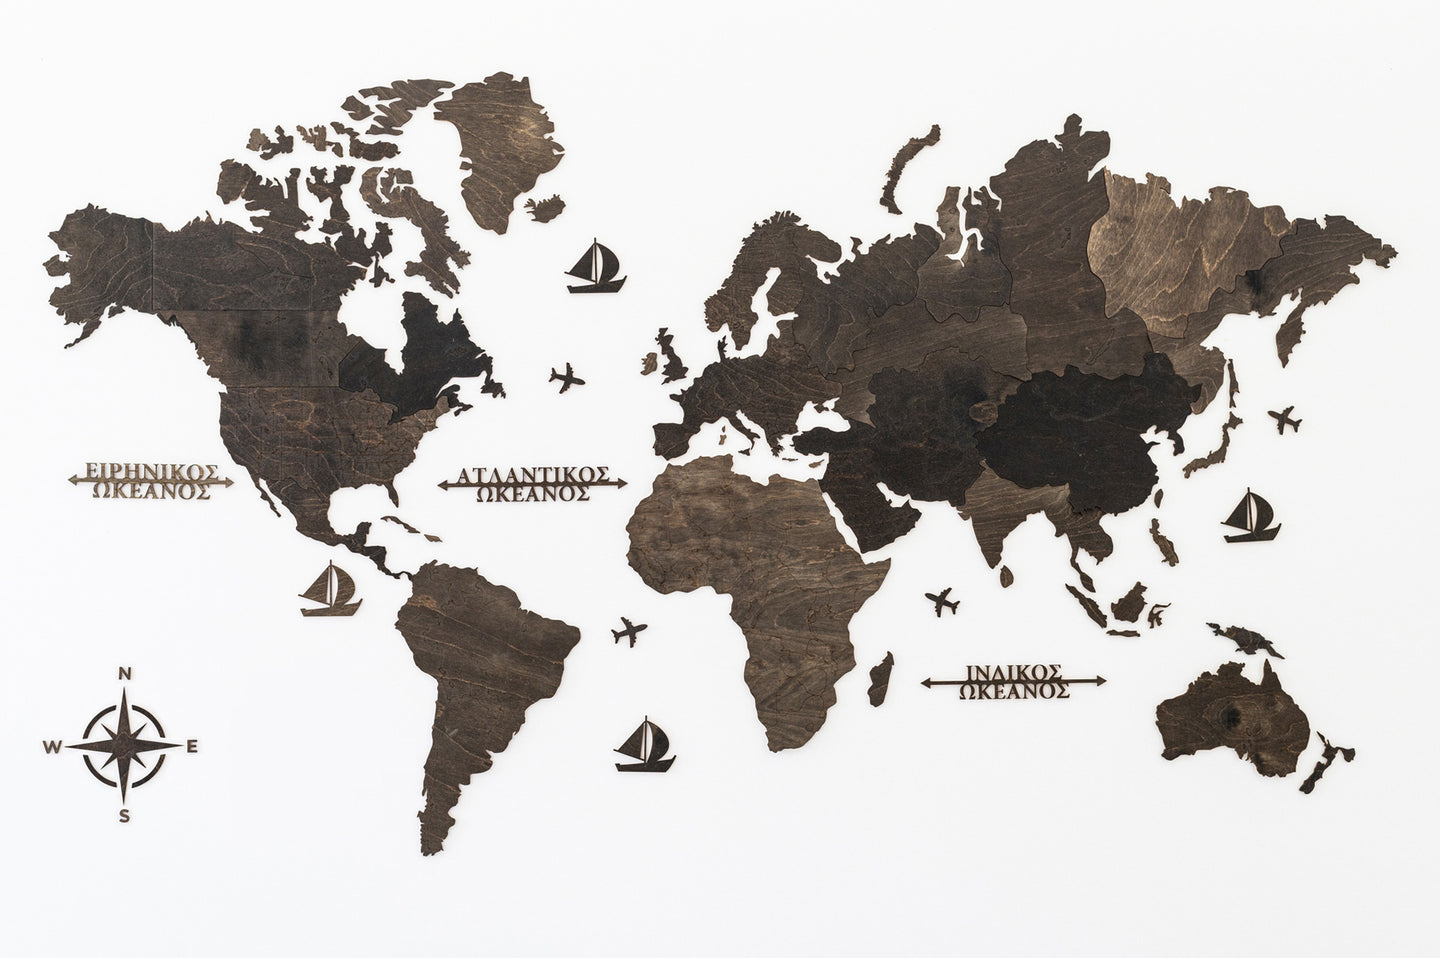 Ξύλινος παγκόσμιος χάρτης τοίχου ΒΕΓΚΕ - (190 x 110) / Κενός